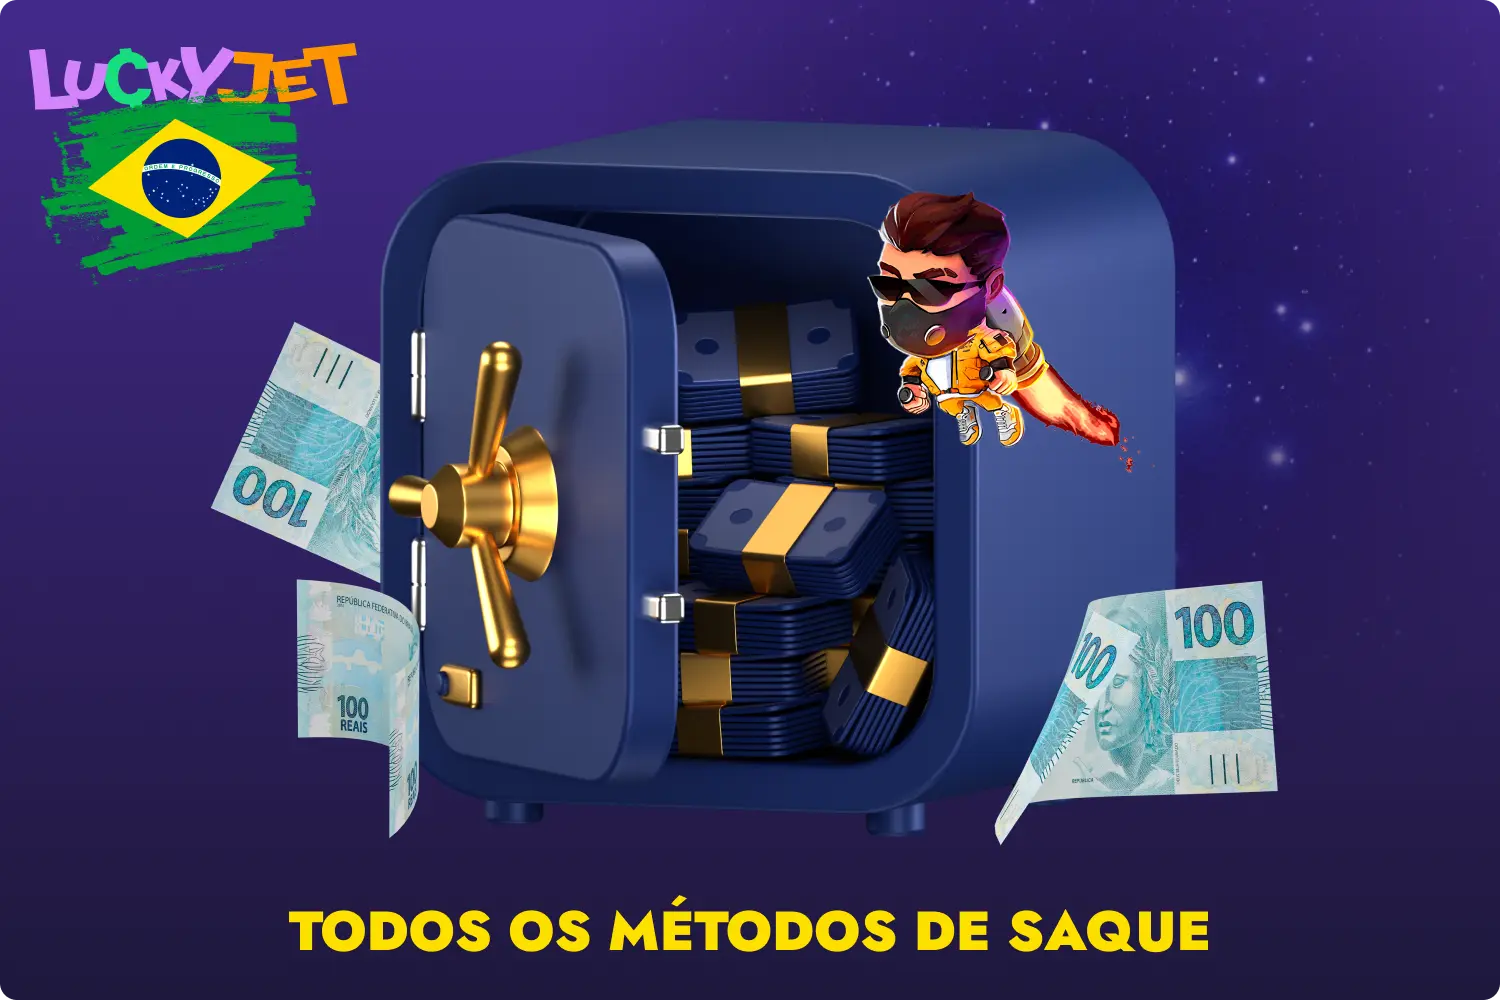 Para os jogadores brasileiros, o site 1win Lucky Jet oferece métodos de pagamento fiáveis para transacções financeiras, bem como a possibilidade de utilizar a moeda nacional - o real brasileiro